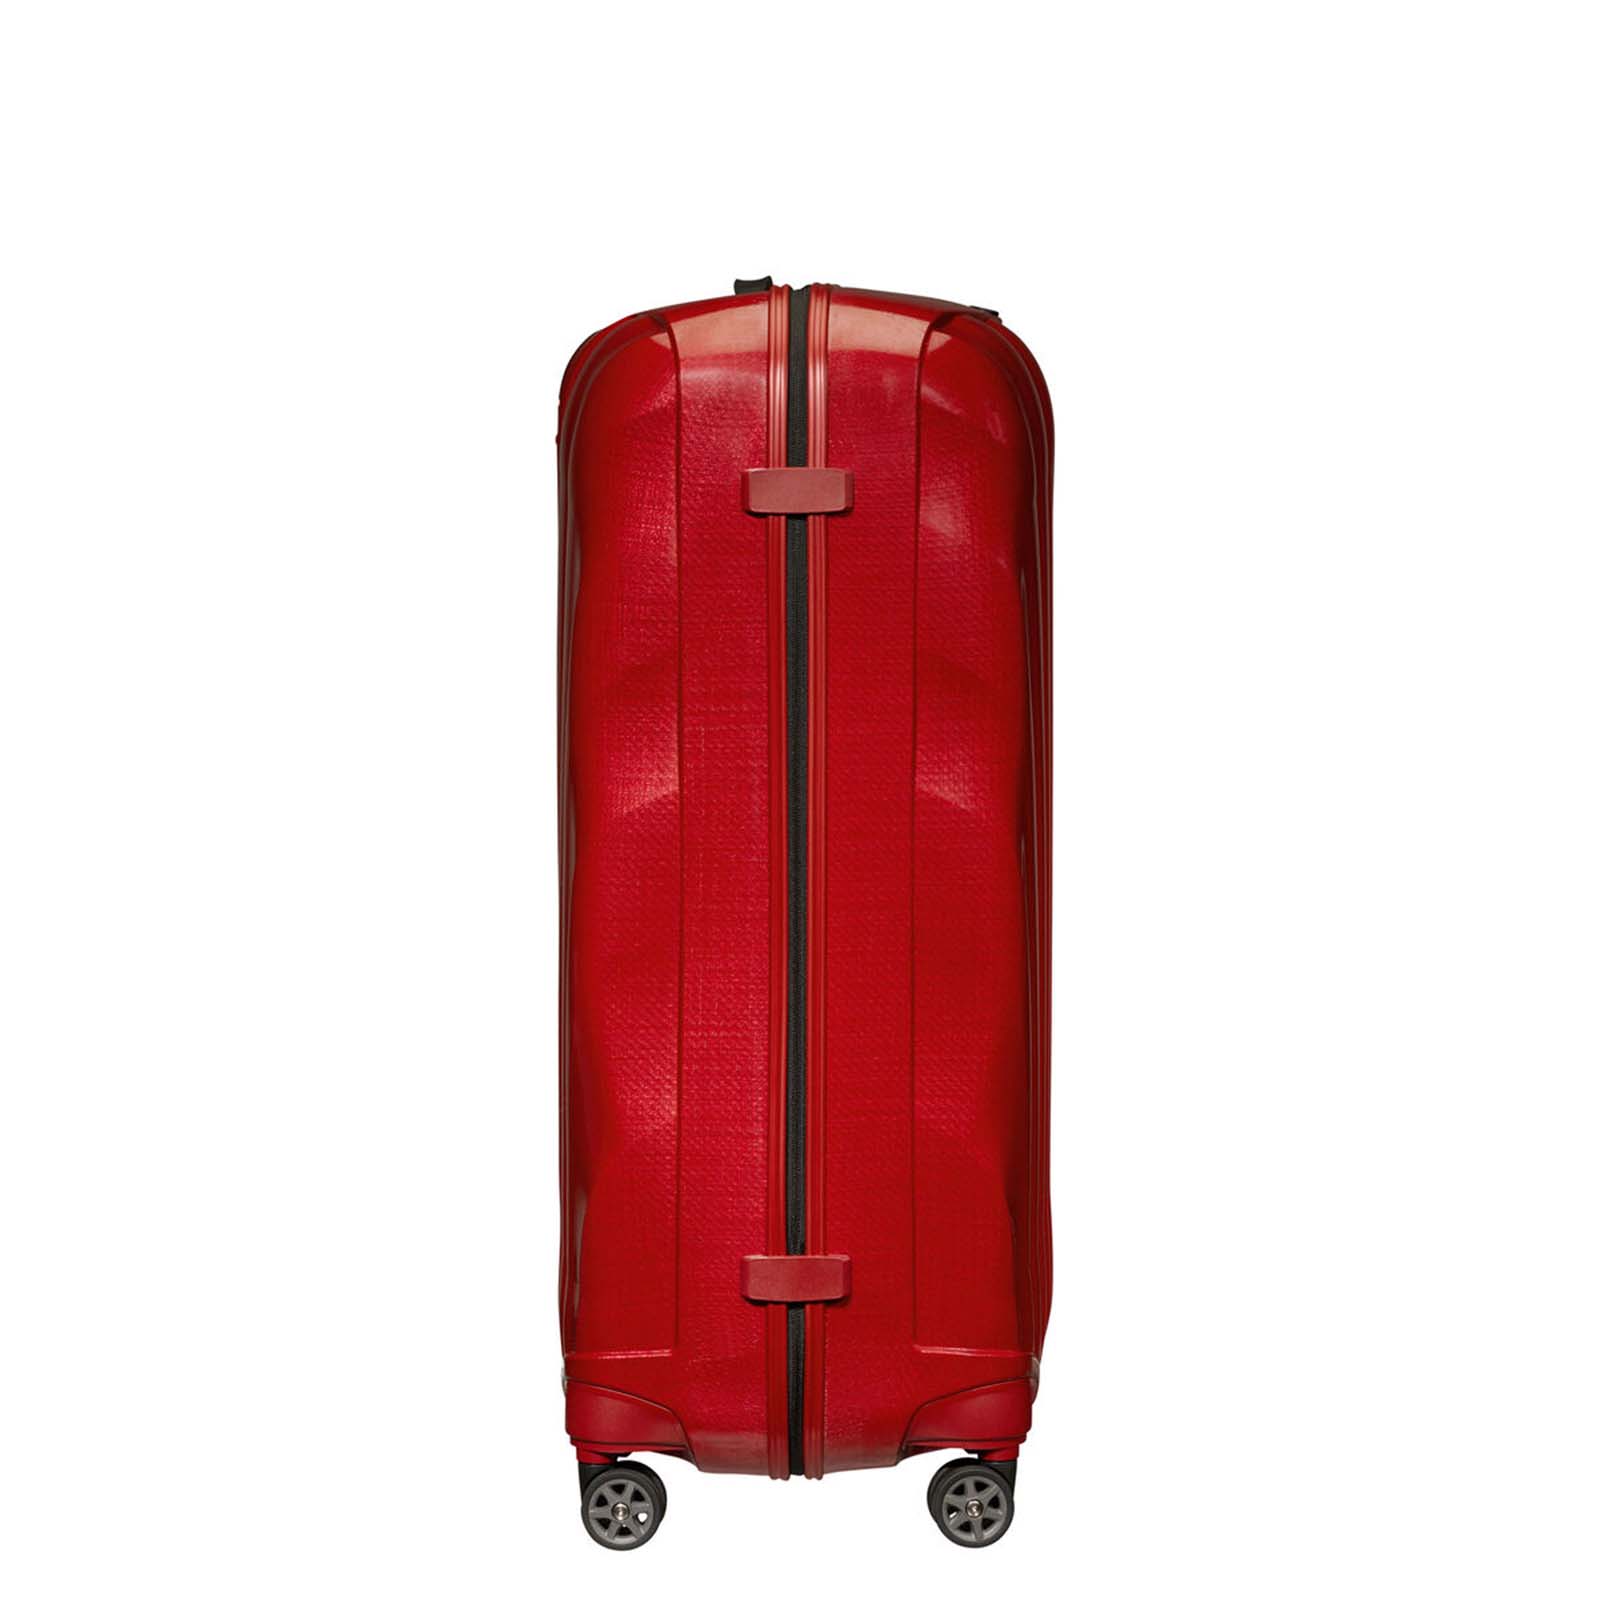 Samsonite-C-Lite-81cm-Suitcase-Chili-Red-Side